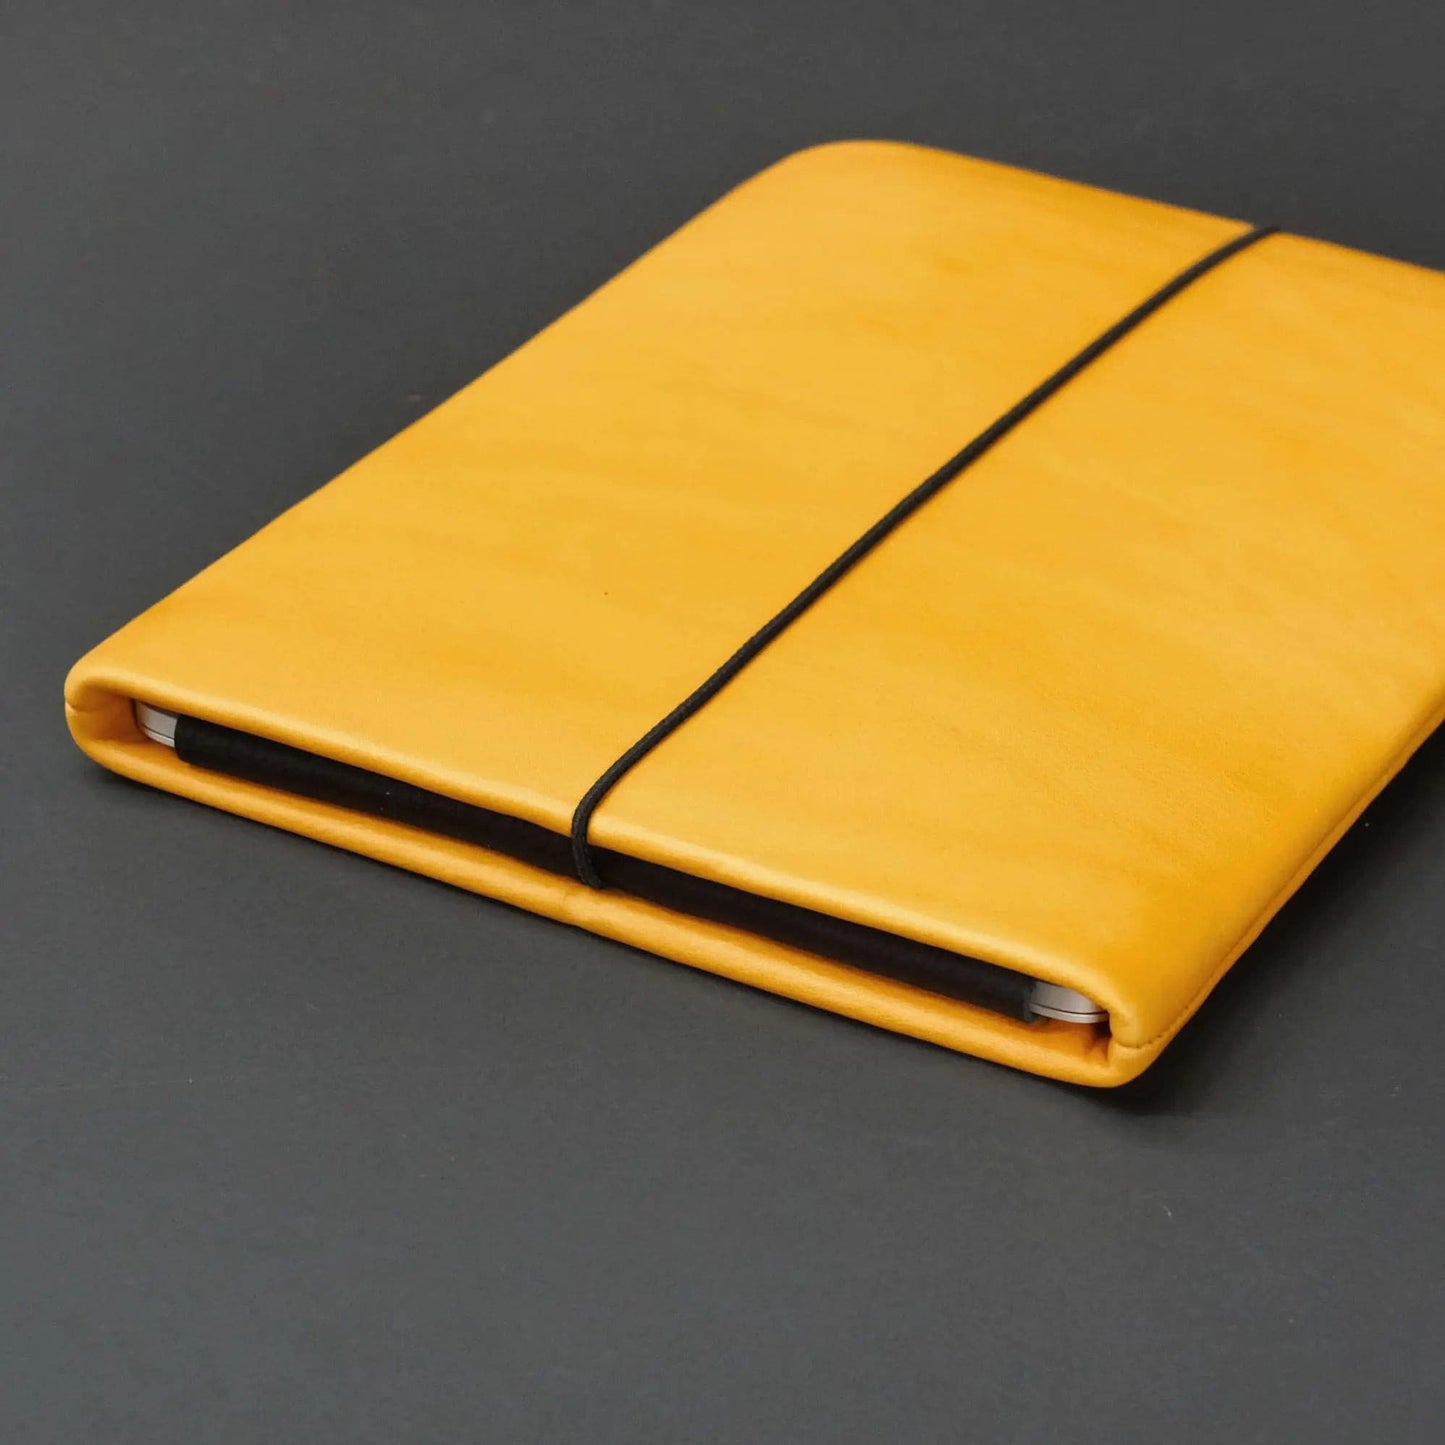 gelbe Lederhülle für Notebooks mit Macbook und schwarzem Verschlussgummi